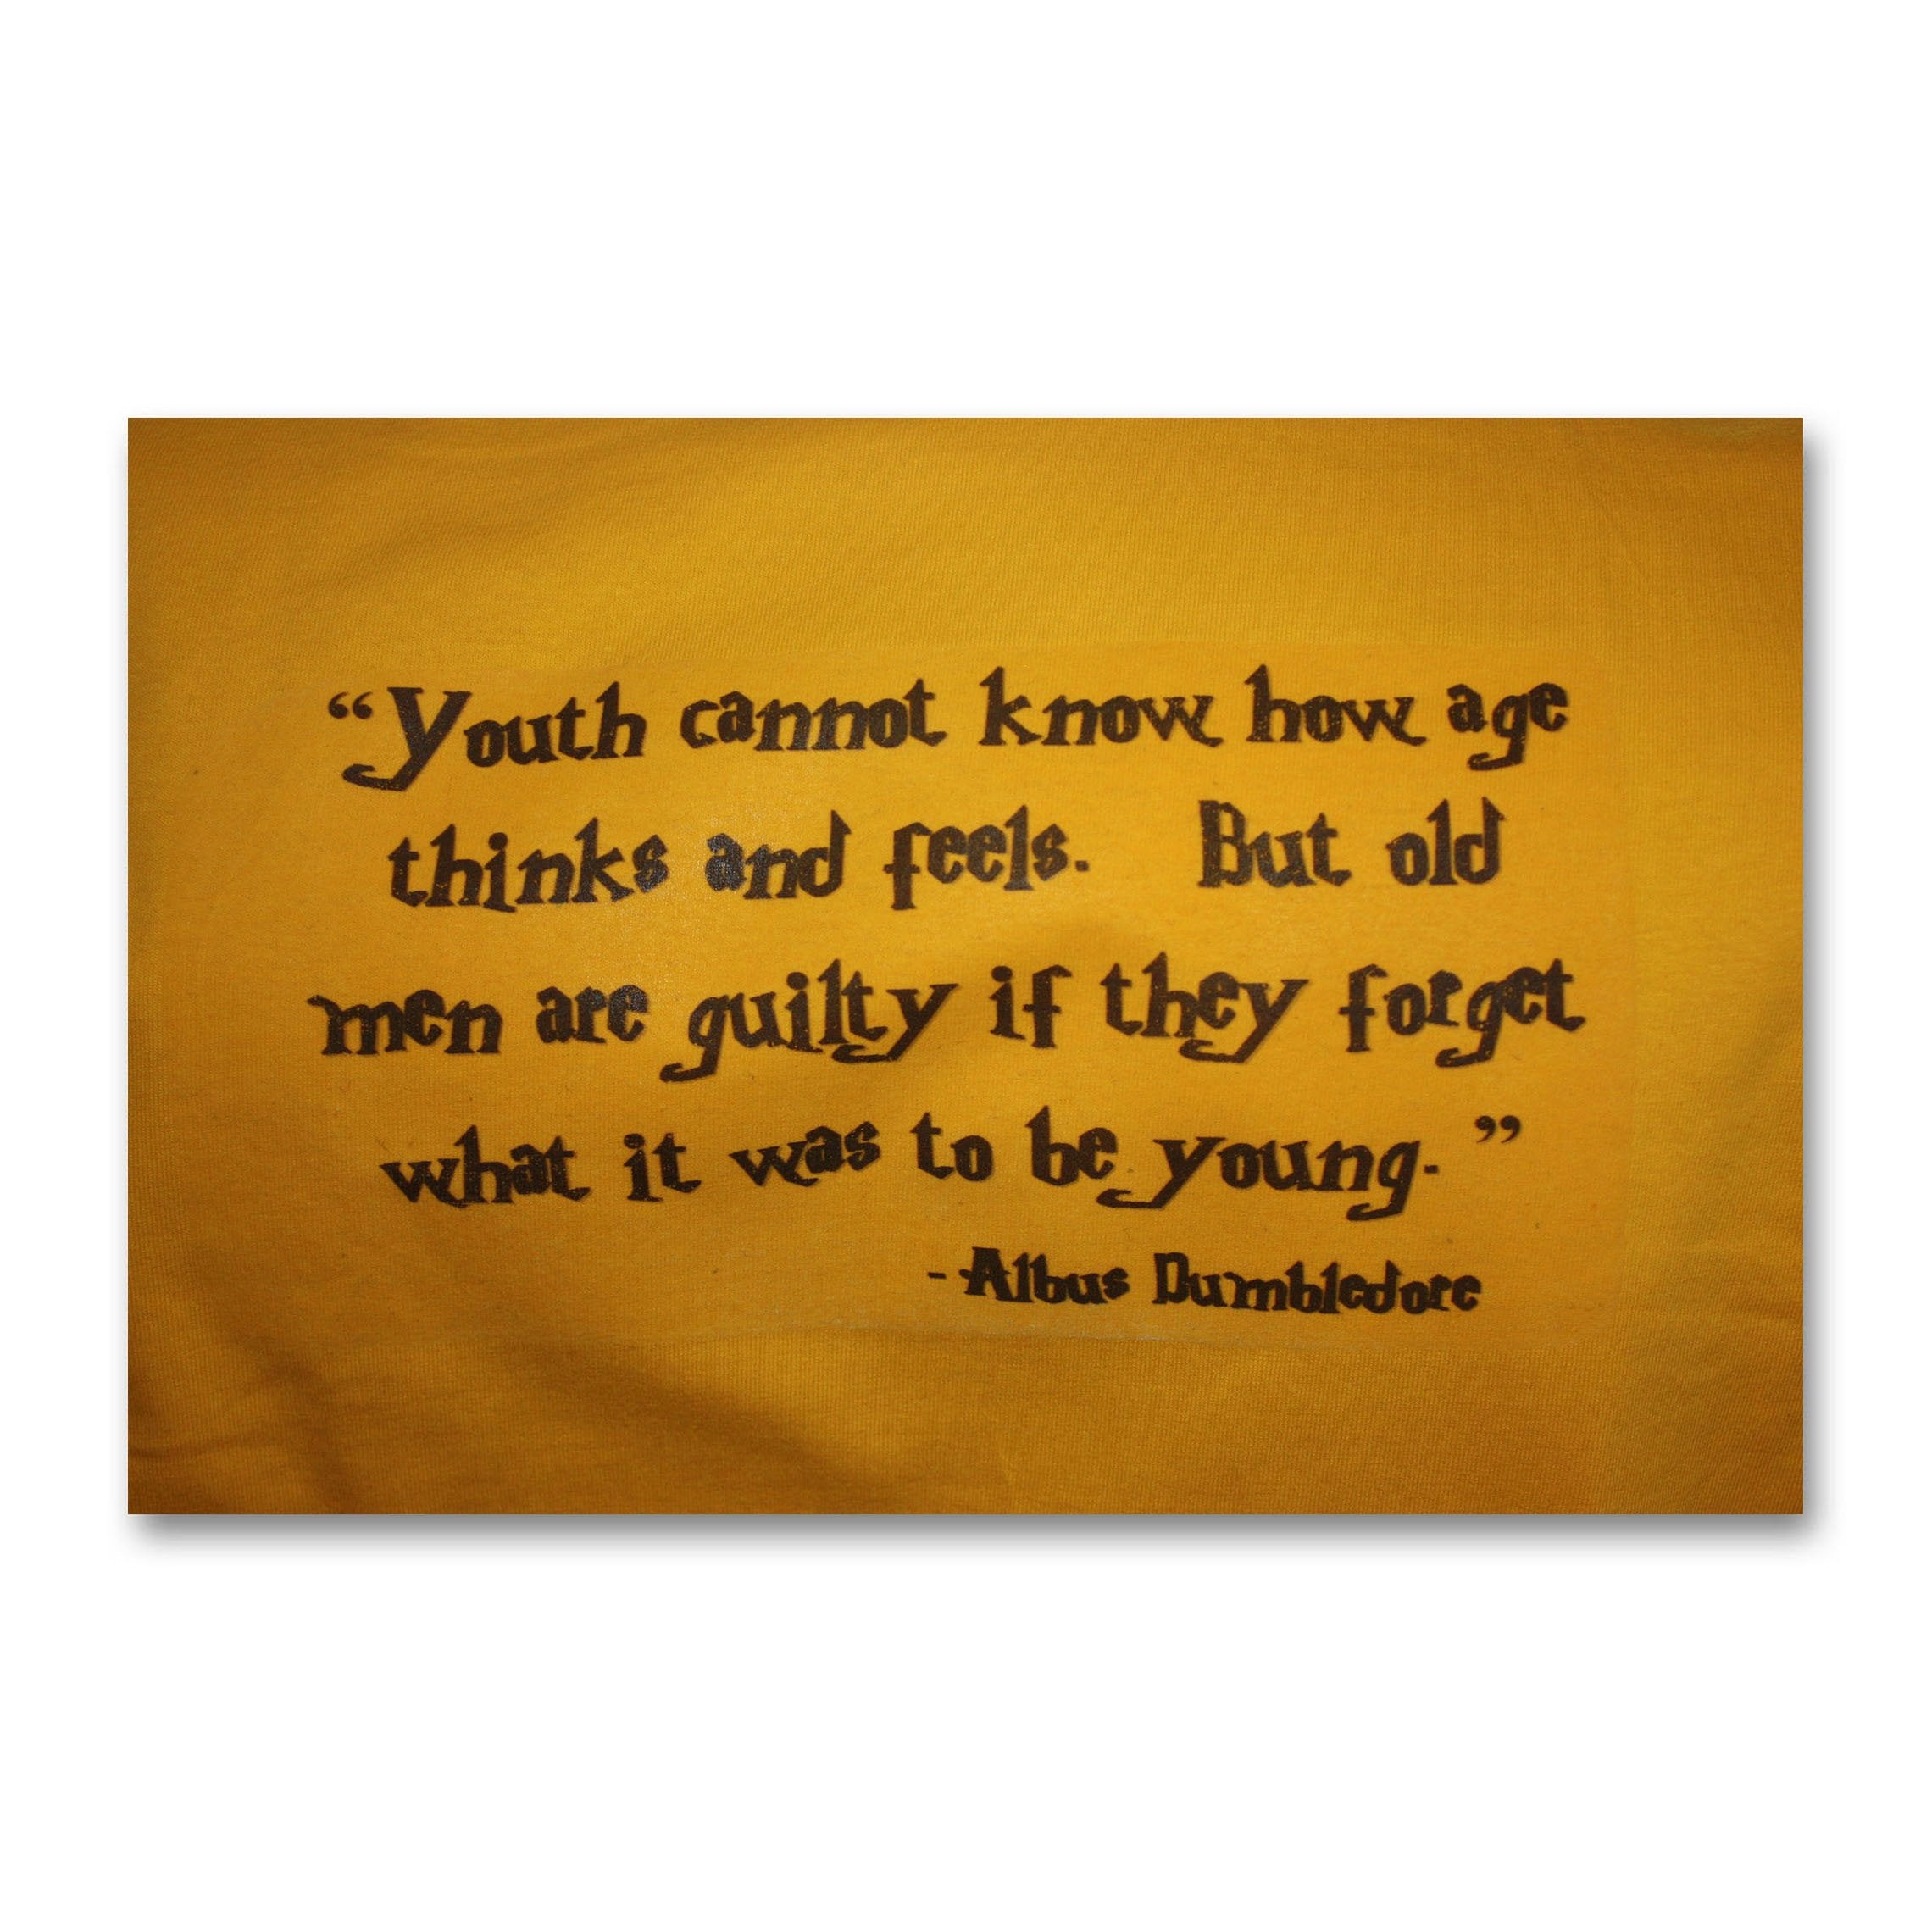 Quote of Albus Dumbledore